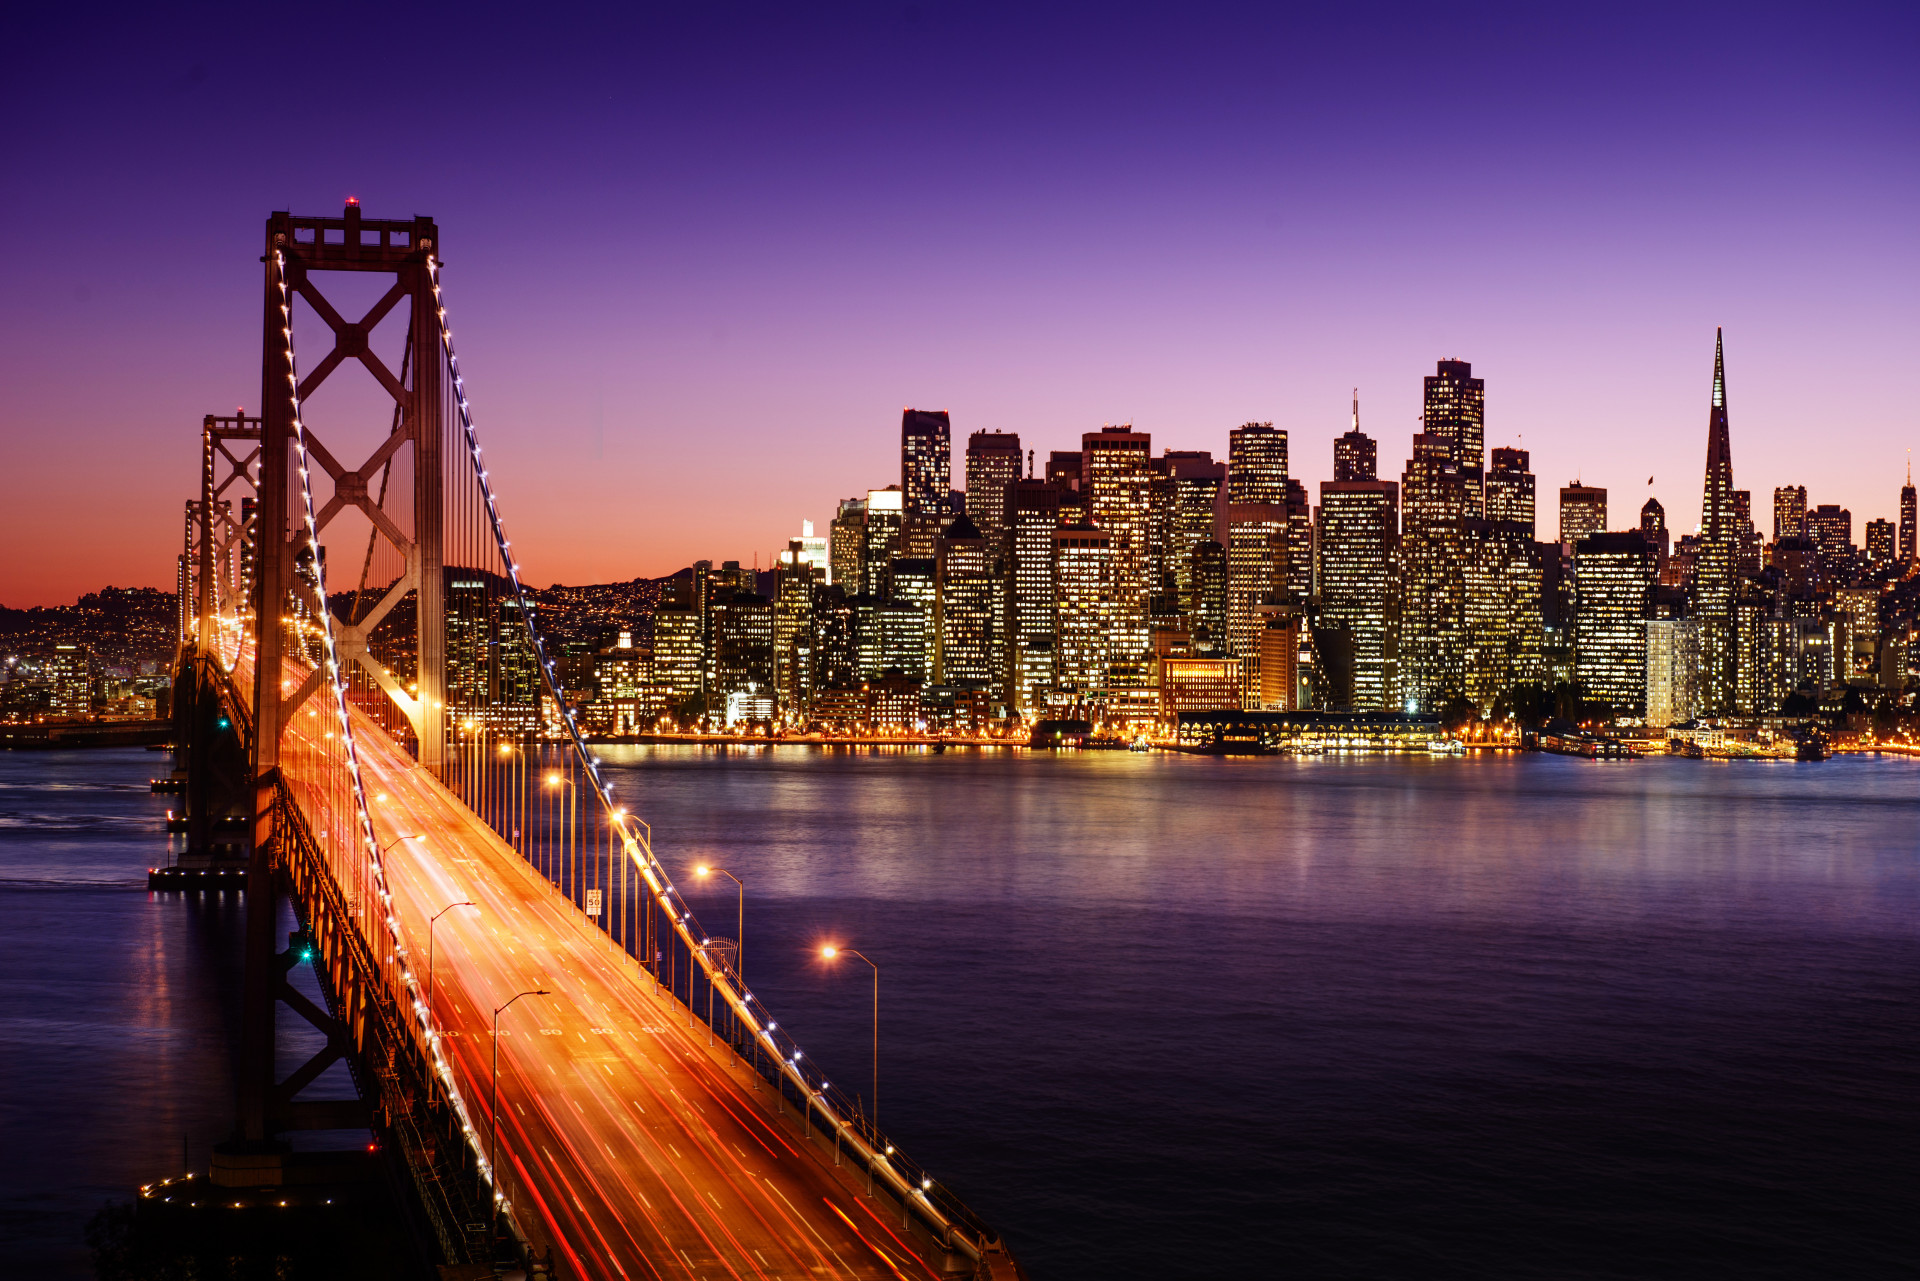 L'emblématique Golden Gate, dans la baie de San Francisco, permet à ce paysage urbain de se démarquer en beauté.<p><a href="https://www.msn.com/fr-ca/community/channel/vid-7xx8mnucu55yw63we9va2gwr7uihbxwc68fxqp25x6tg4ftibpra?cvid=94631541bc0f4f89bfd59158d696ad7e">Suivez-nous et accédez tous les jours à du contenu exclusif</a></p>